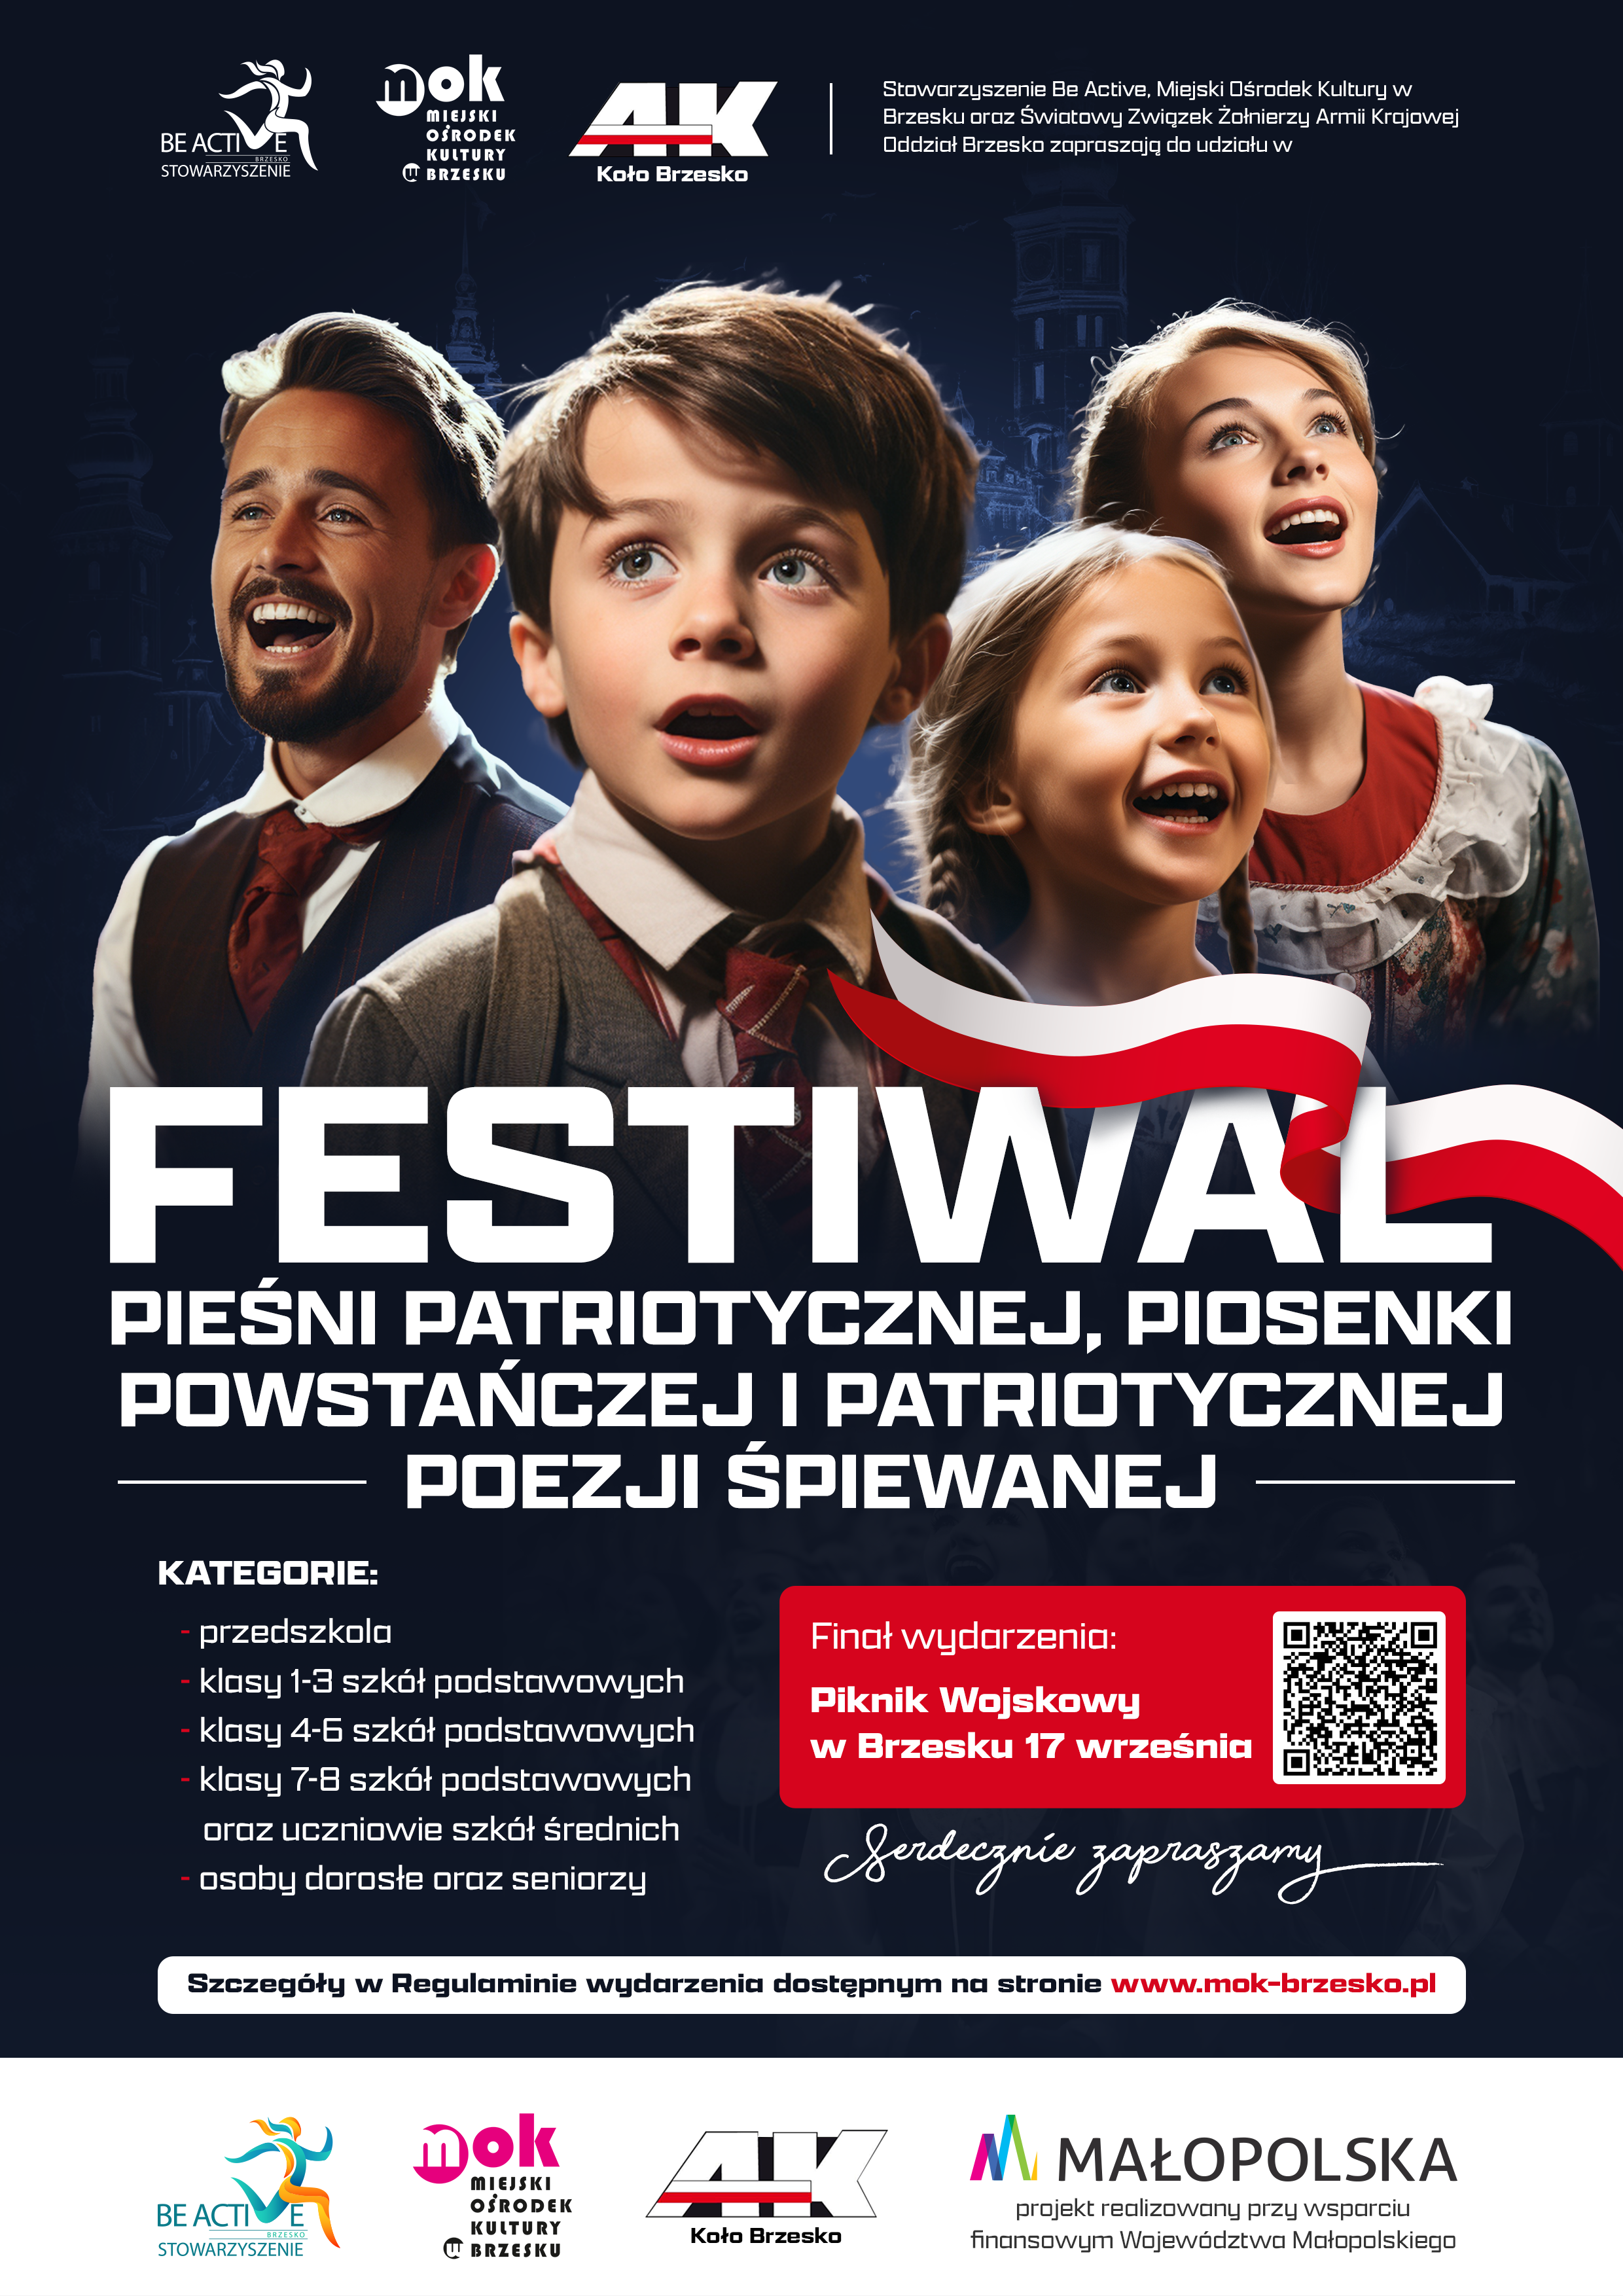 Uczestnicy zakwalifikowani do Finału “Festiwalu Pieśni Patriotycznej, Piosenki Powstańczej i Patriotycznej Poezji Śpiewanej”